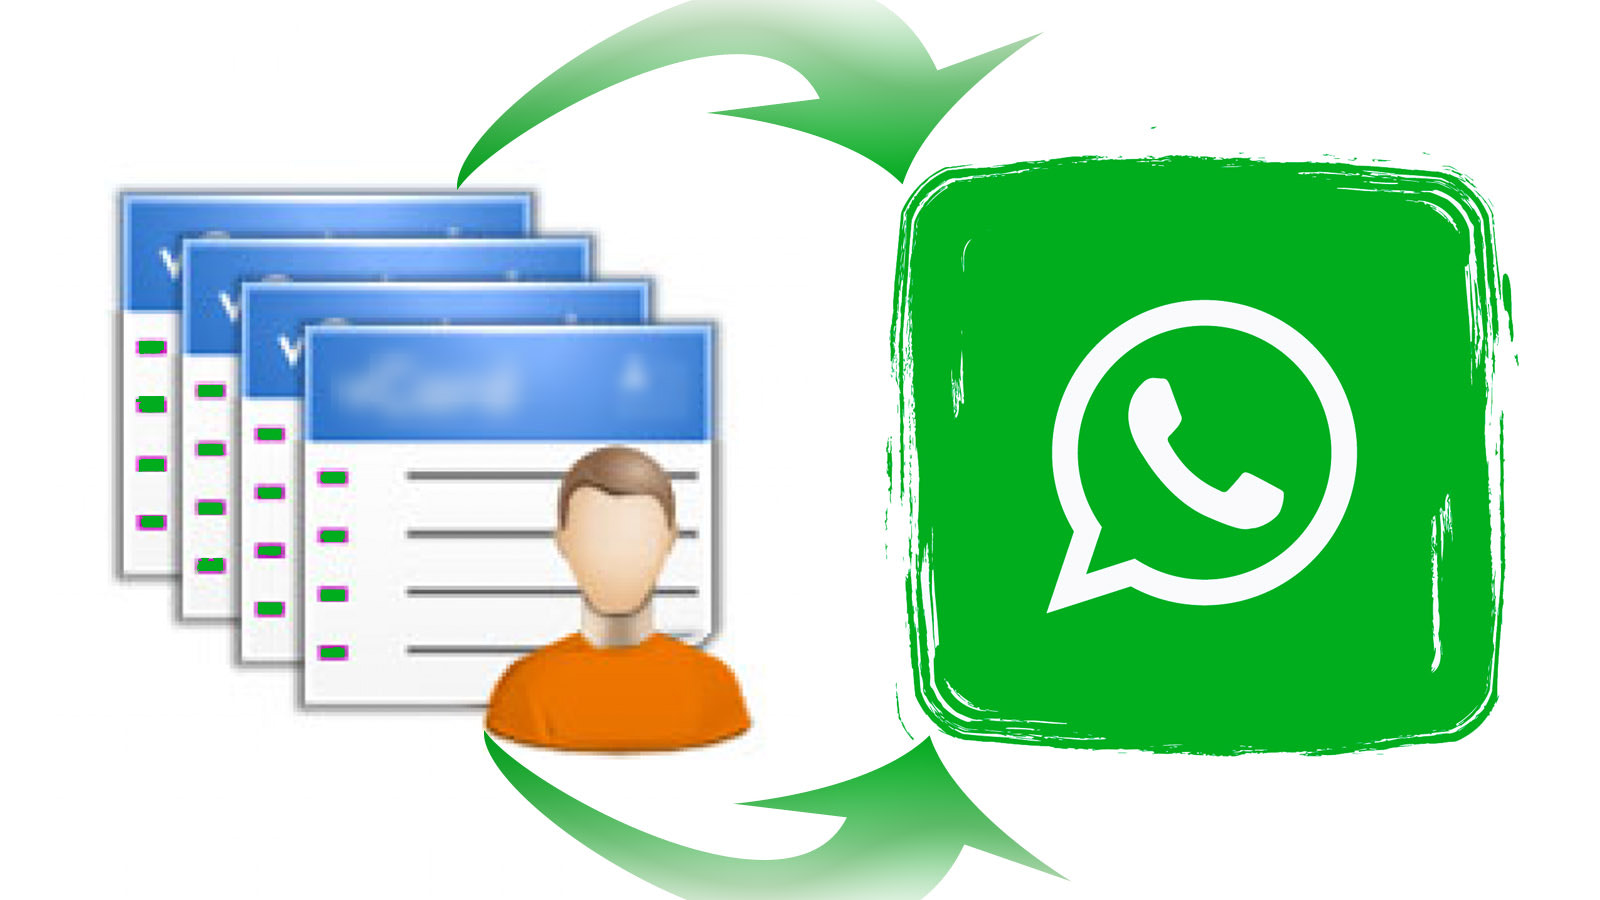 將用戶轉移到 Whatsapp 和 Whatsapp 群組。